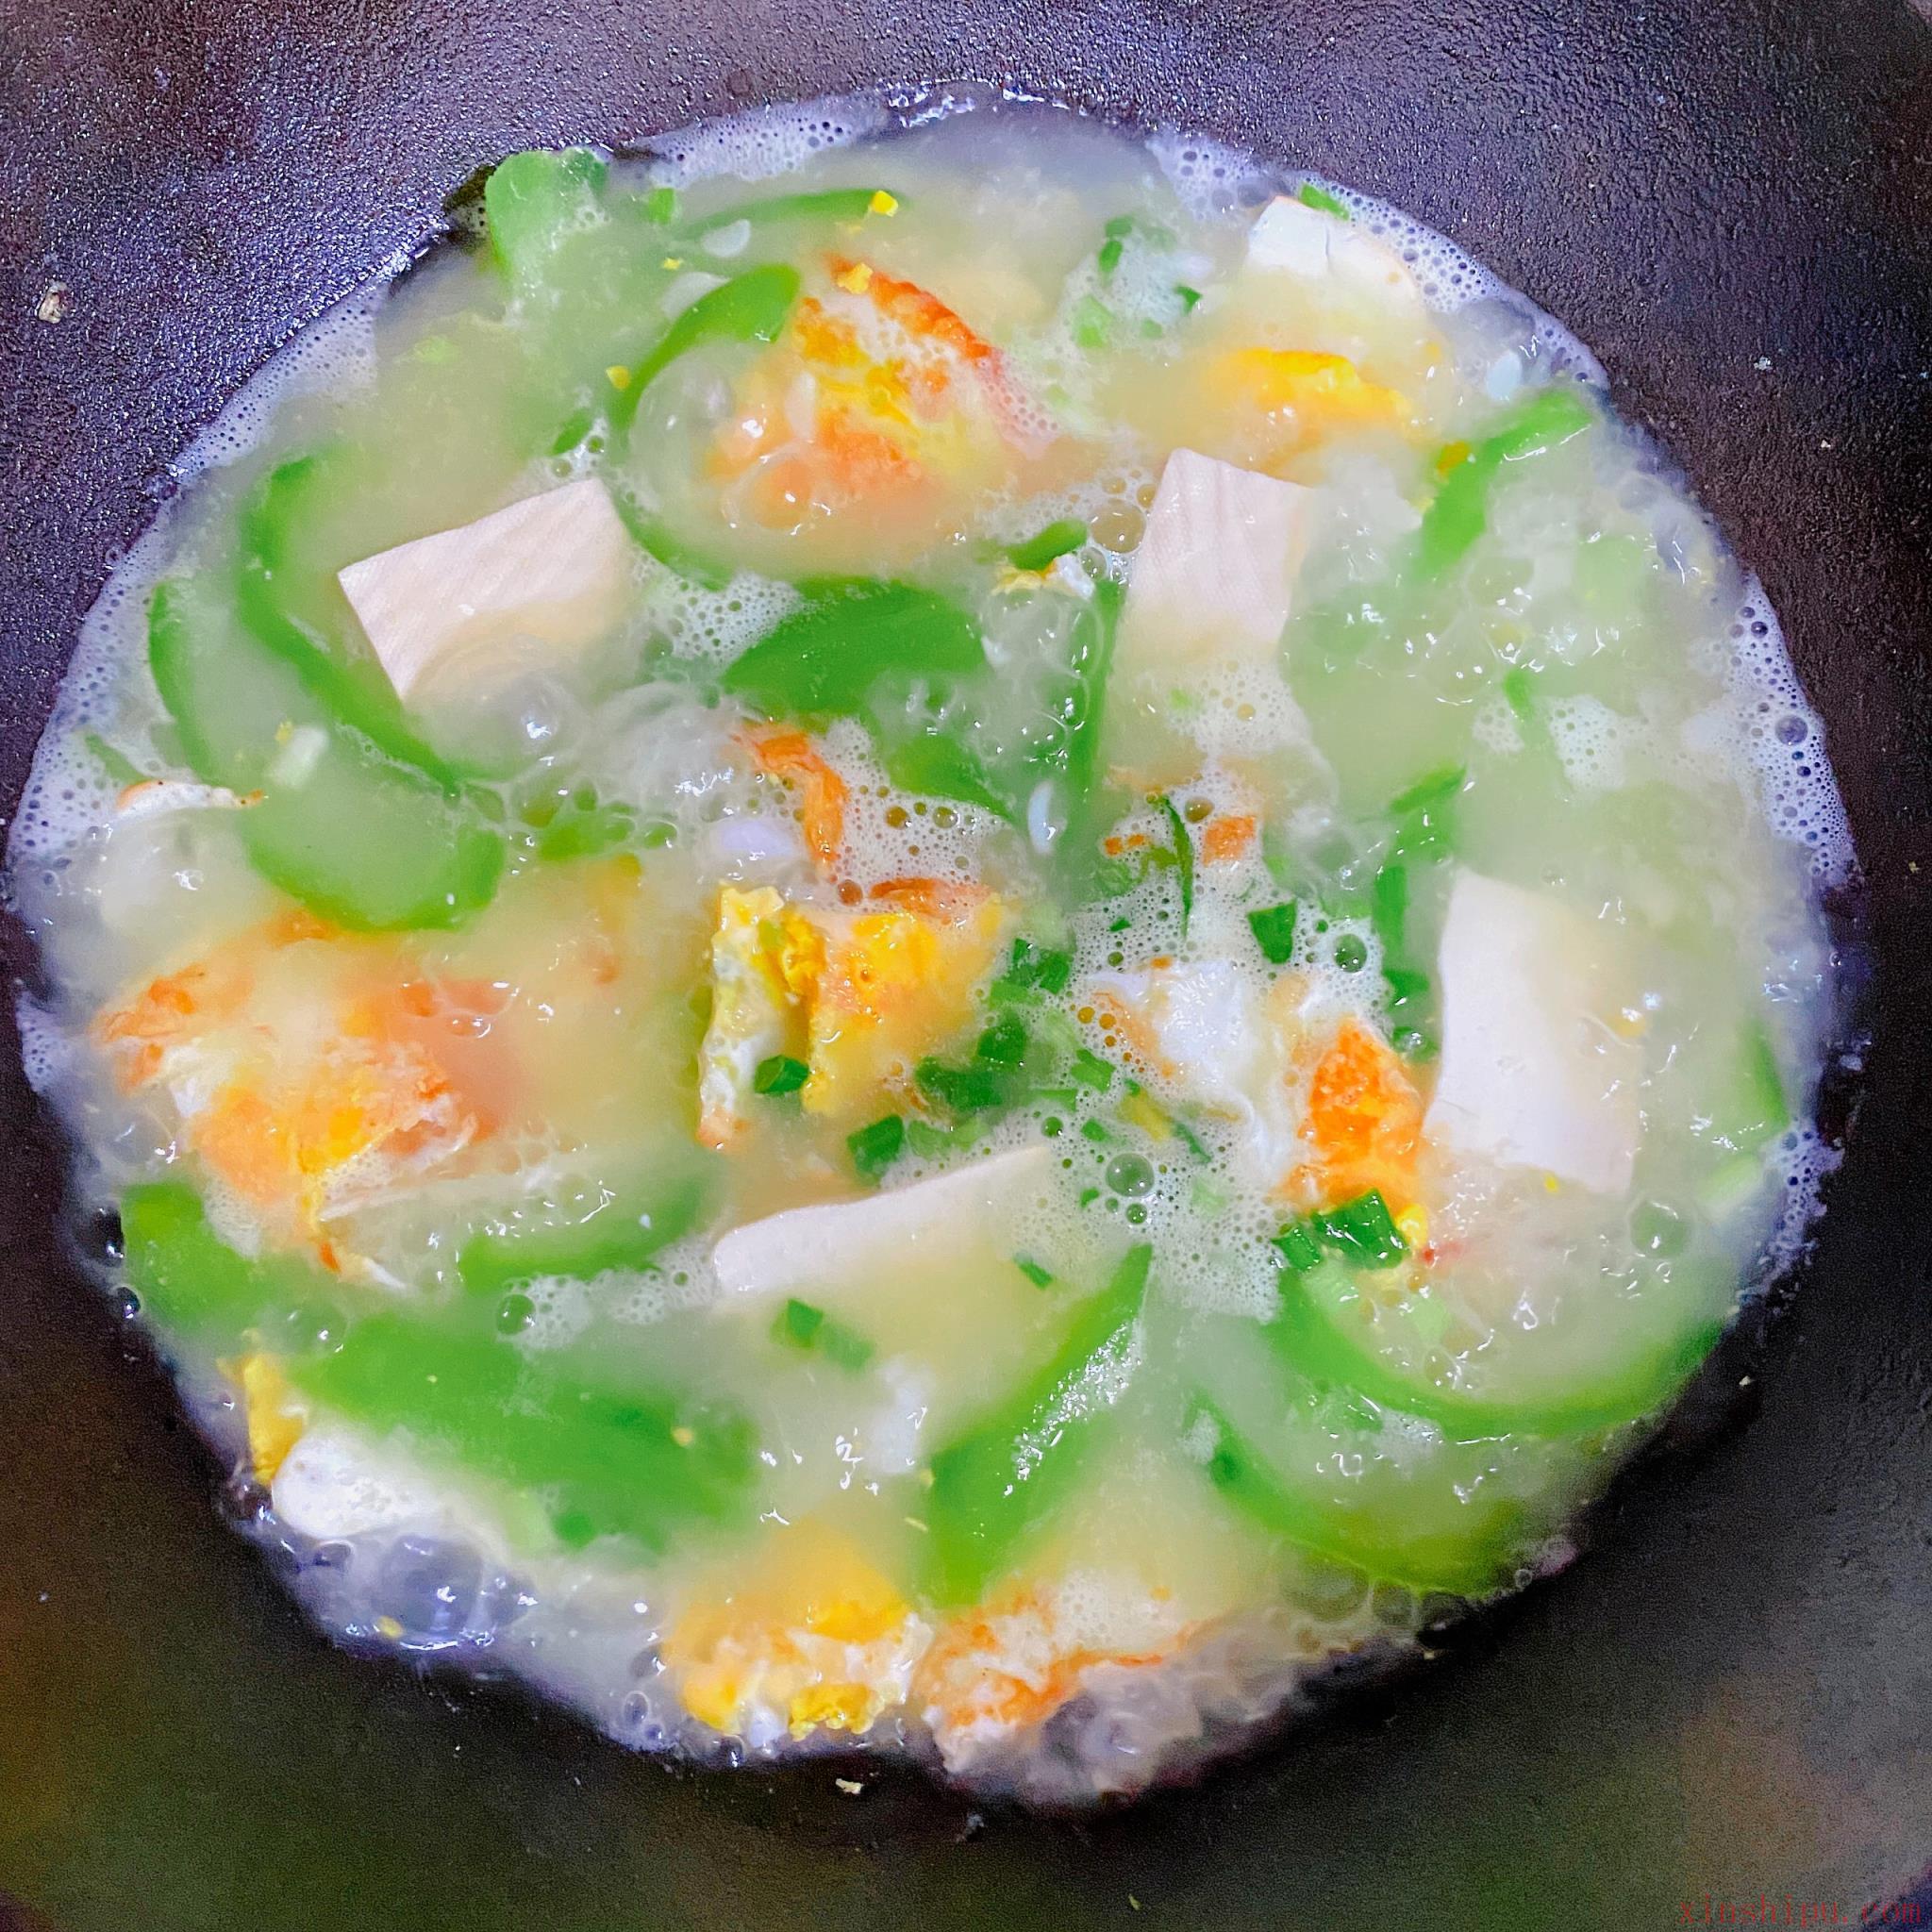 丝瓜鸡蛋汤直接炒丝瓜就错了，这样做汤汁浓白，丝瓜翠绿不发黑